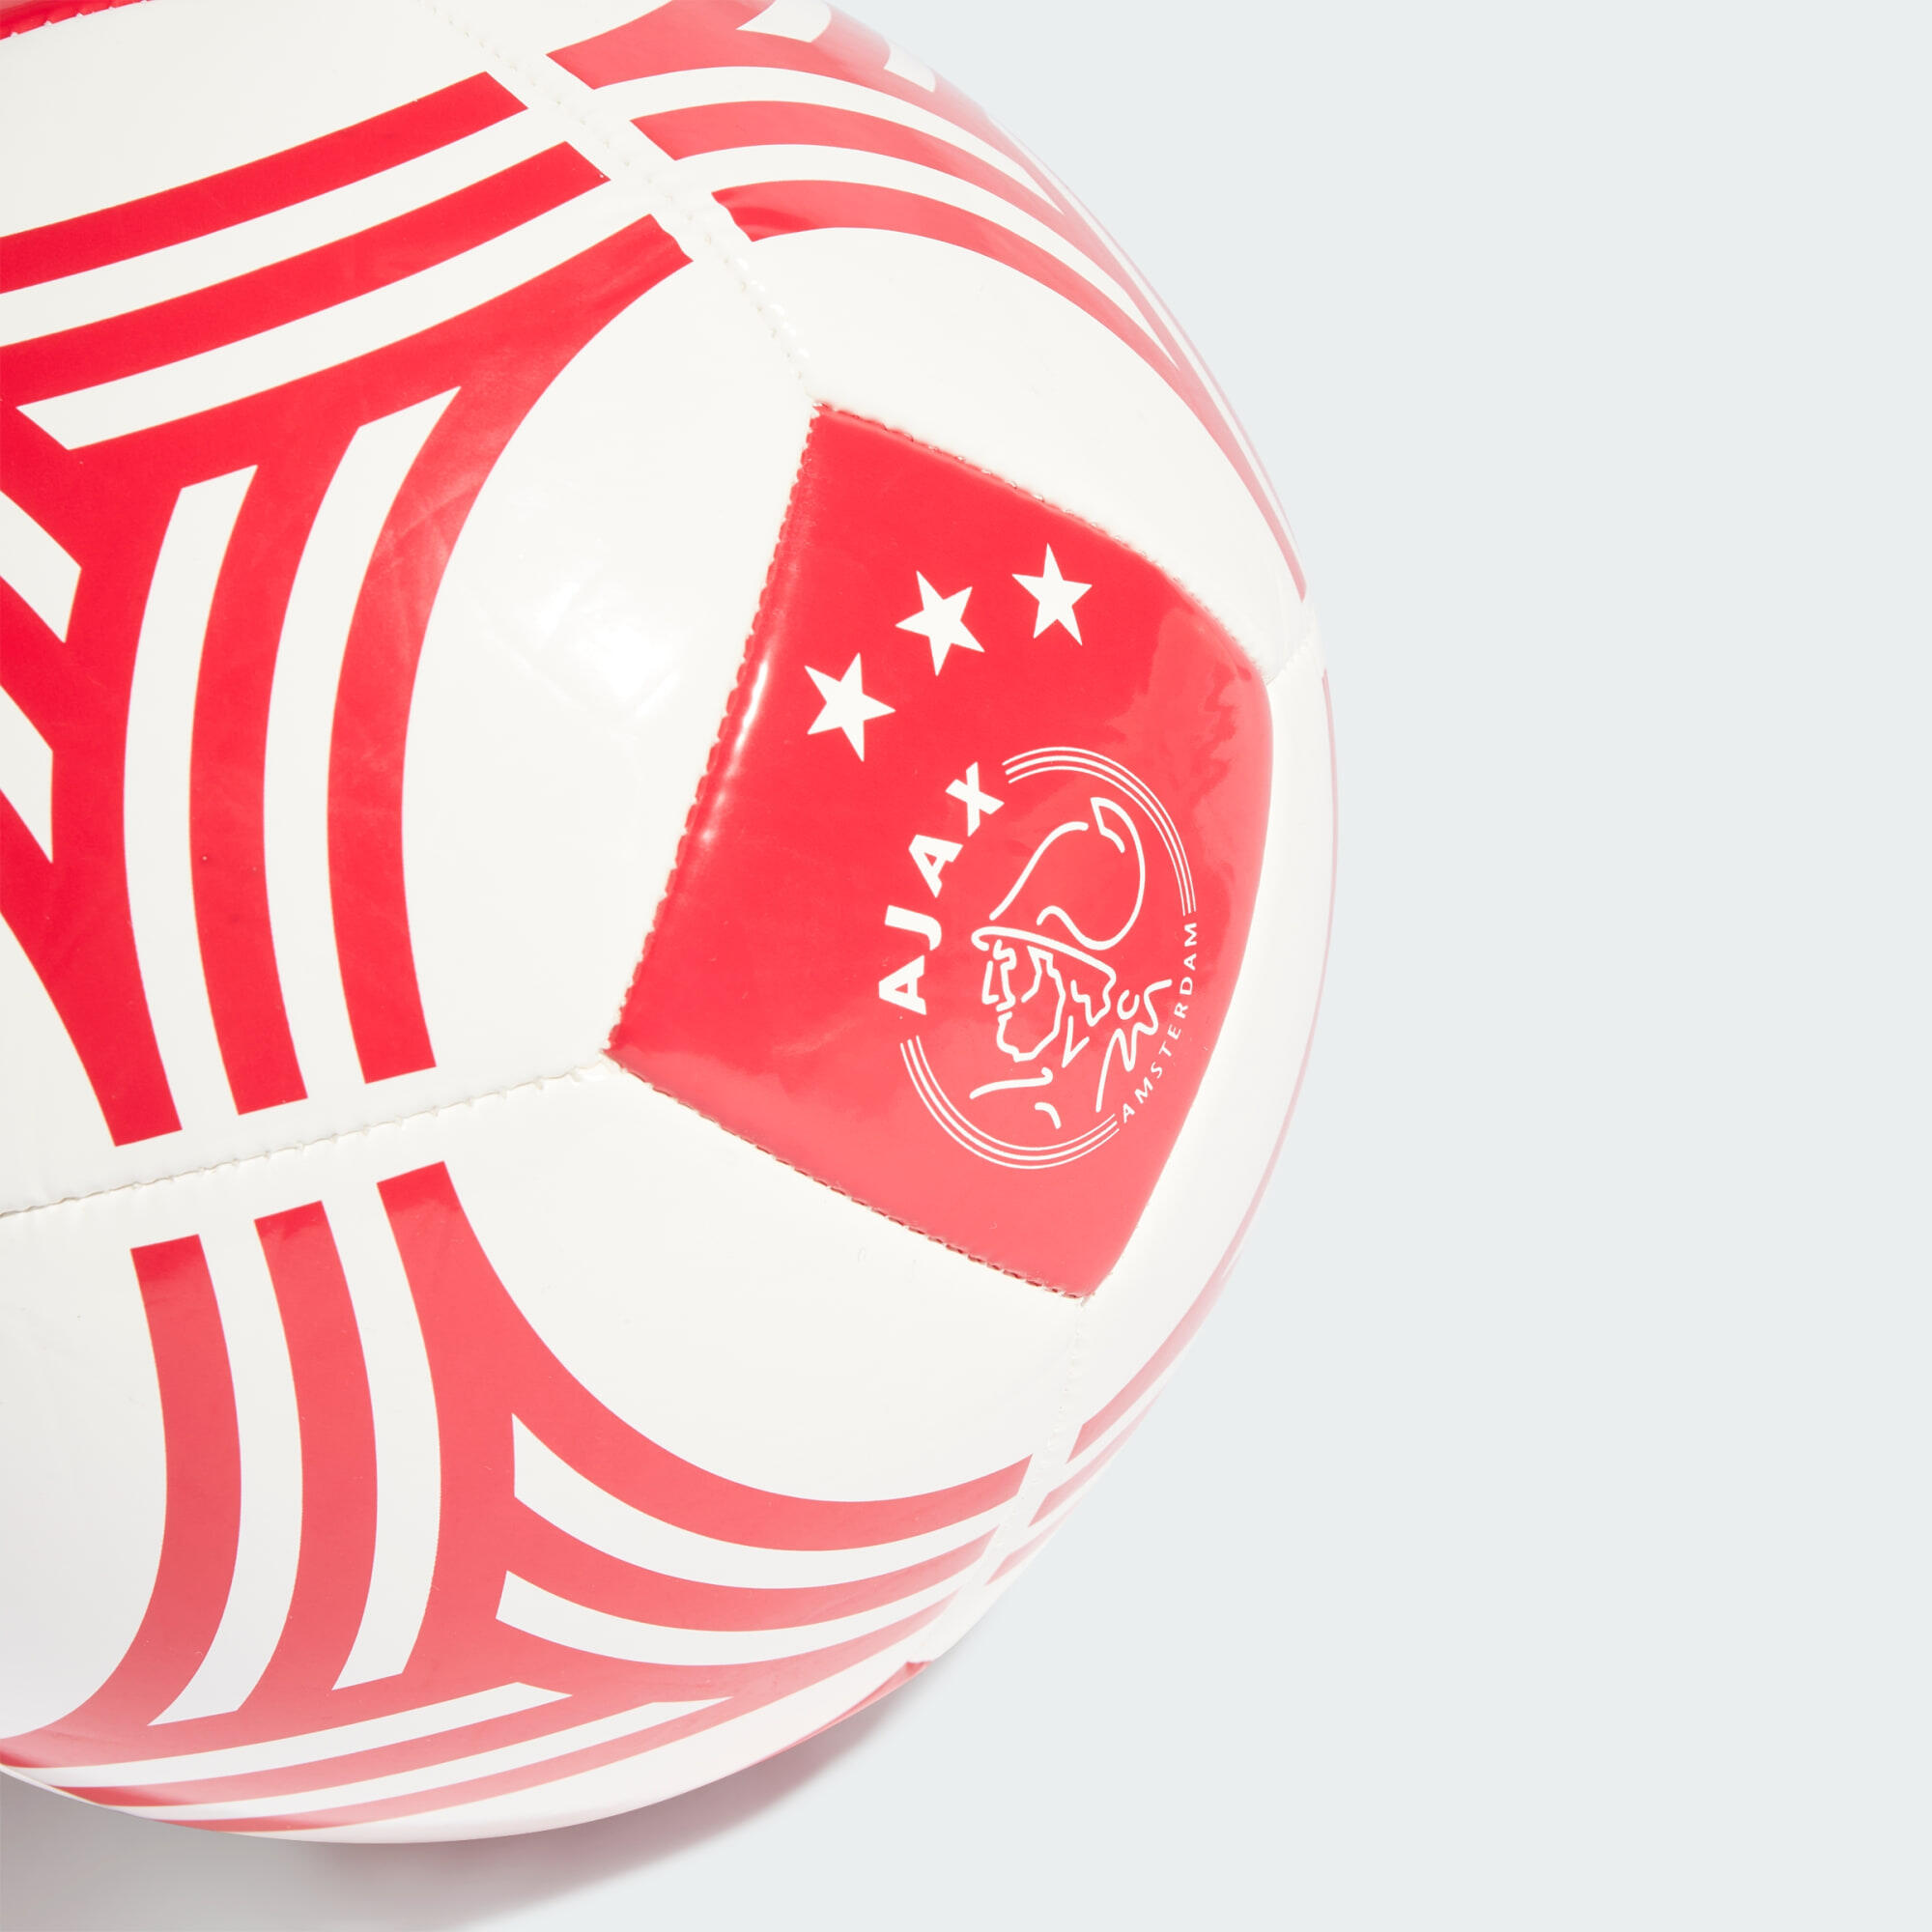 Ajax Amsterdam Home Club Ball 5/6